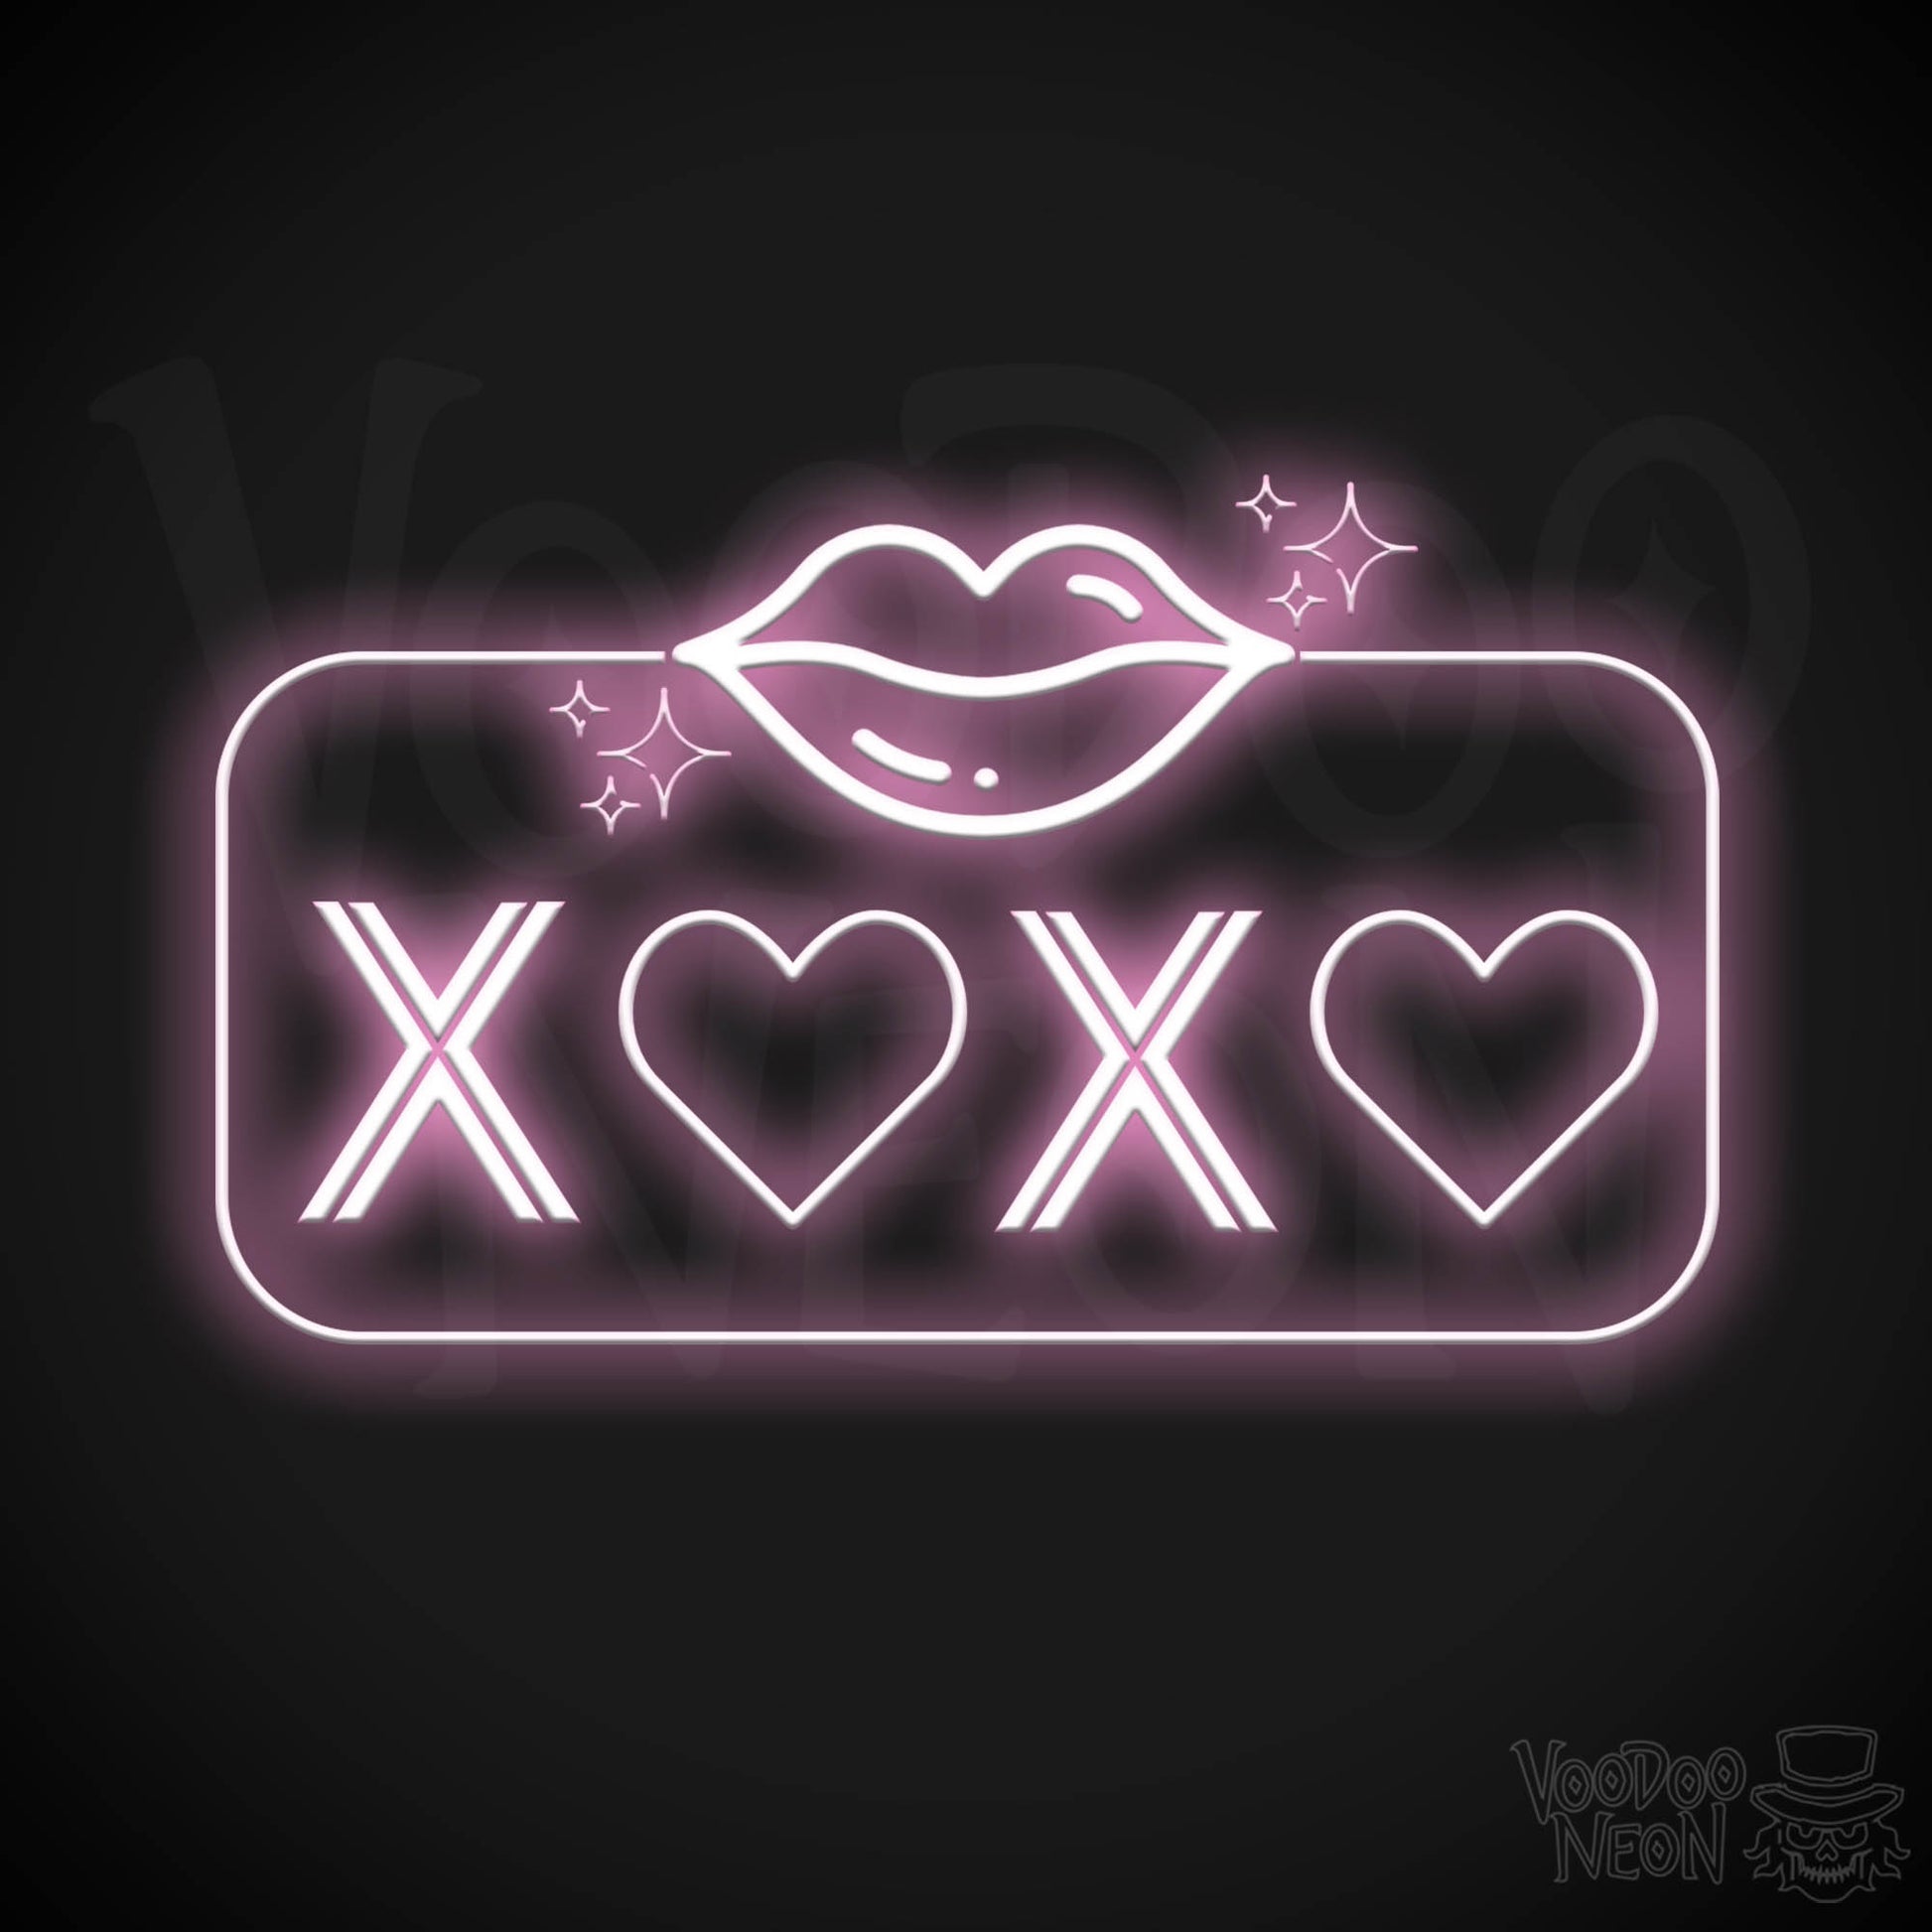 Xoxo Neon Sign - Neon XOXO - Kiss Hug Neon Wall Art - Color Light Pink